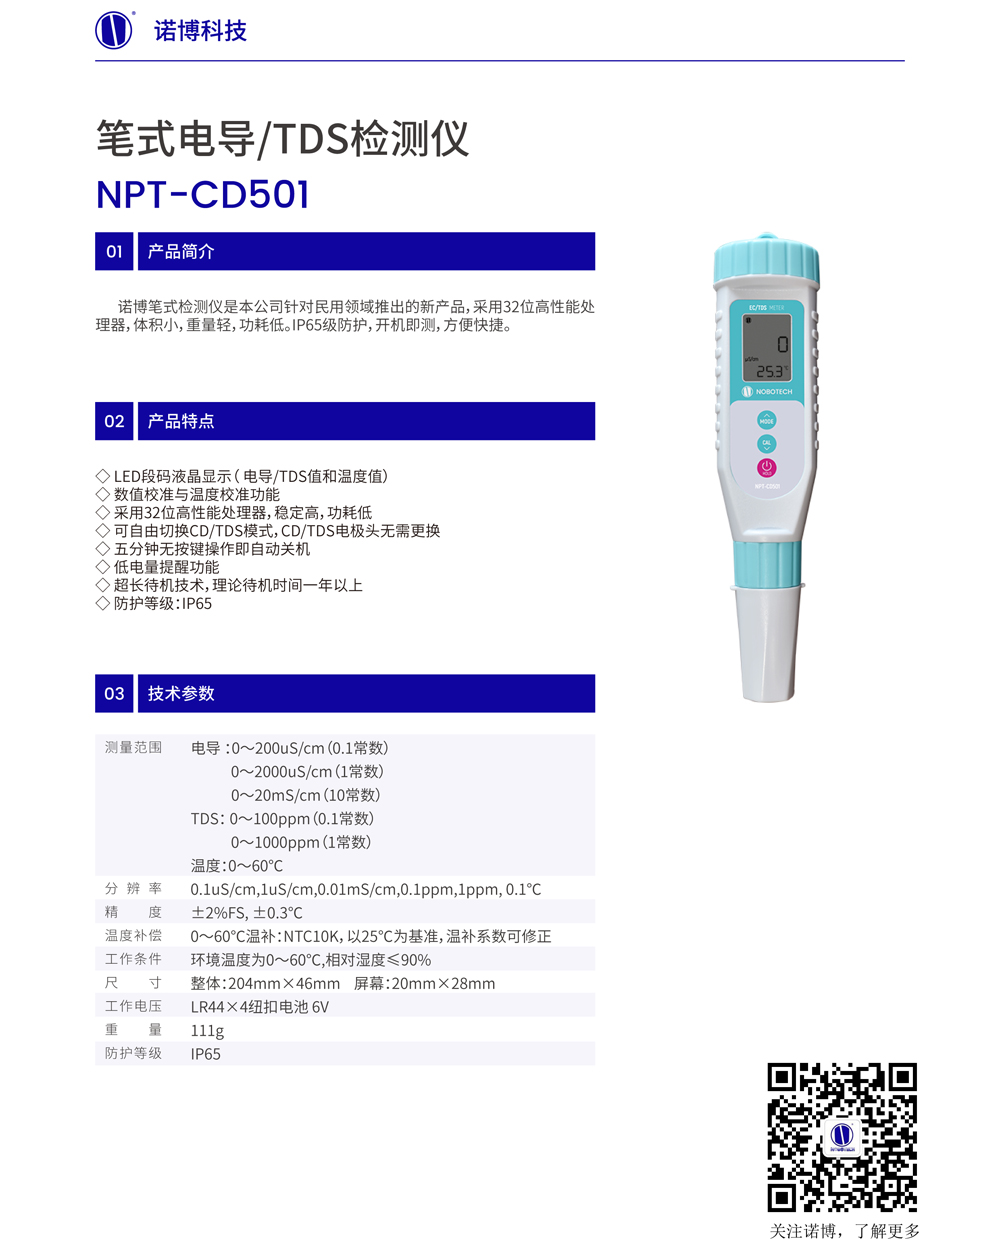 NPT-CD501絼.jpg